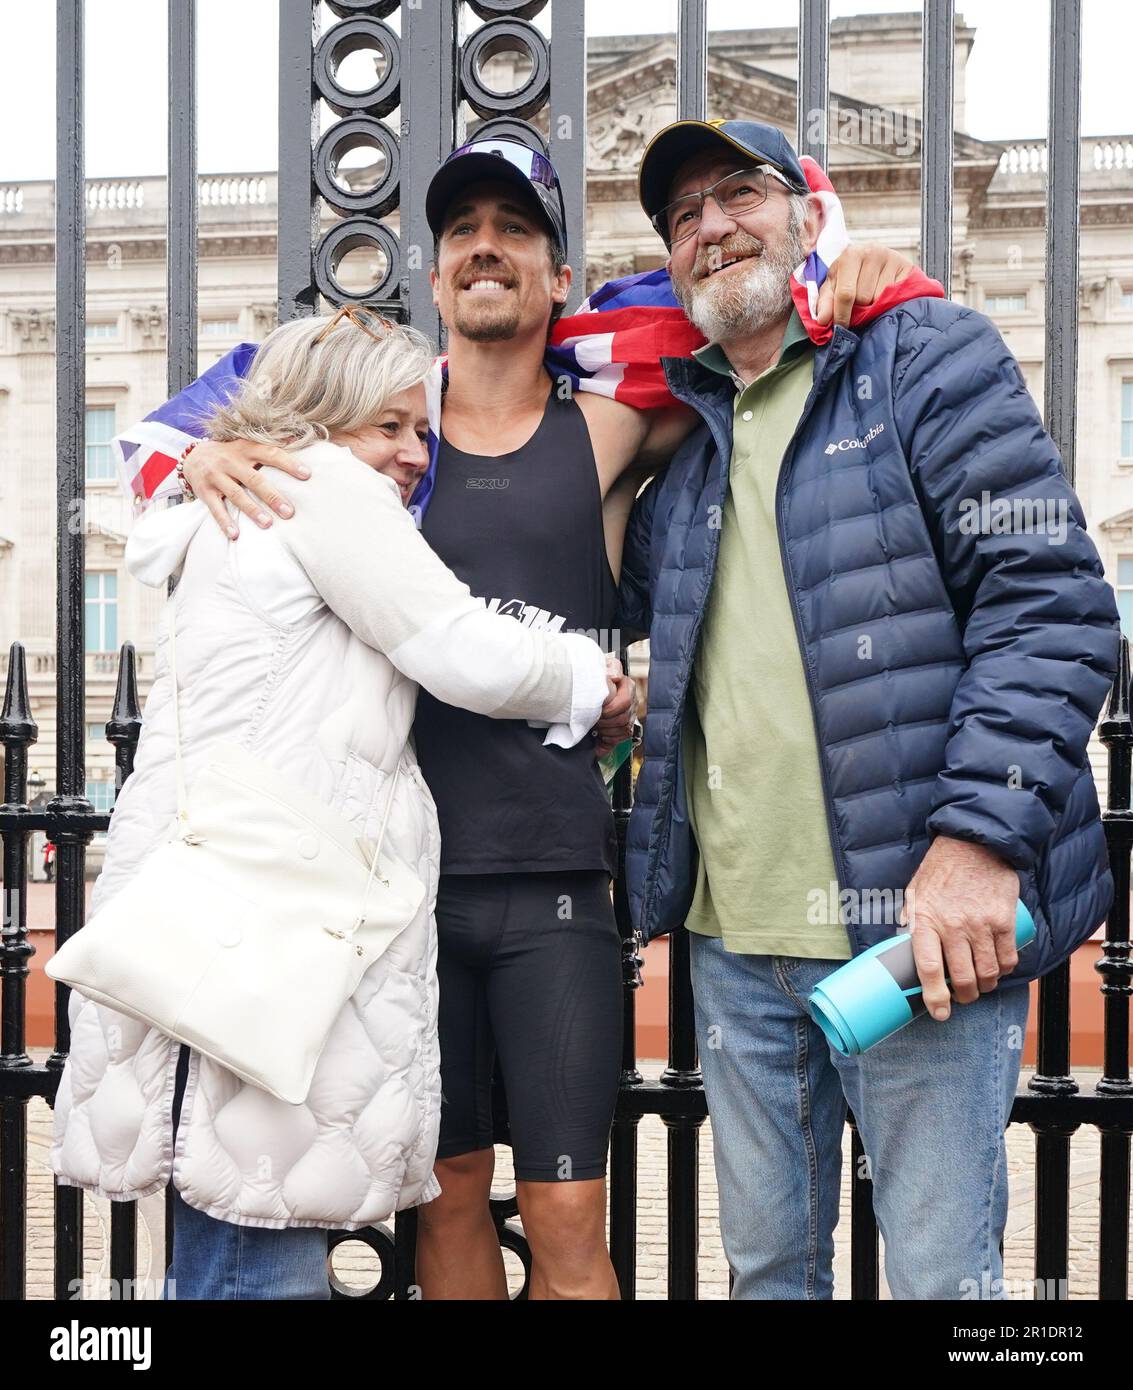 Josh Patterson, ultra-athlète, militant et personnalité de la télévision, devant les portes de Buckingham Palace, Londres, avec ses parents Sarah et Denis, après avoir terminé 76 marathons en jours consécutifs, un dans chaque ville du Royaume-Uni, pour recueillir de l'argent pour les Samaritans. Date de la photo: Samedi 13 mai 2023. Banque D'Images